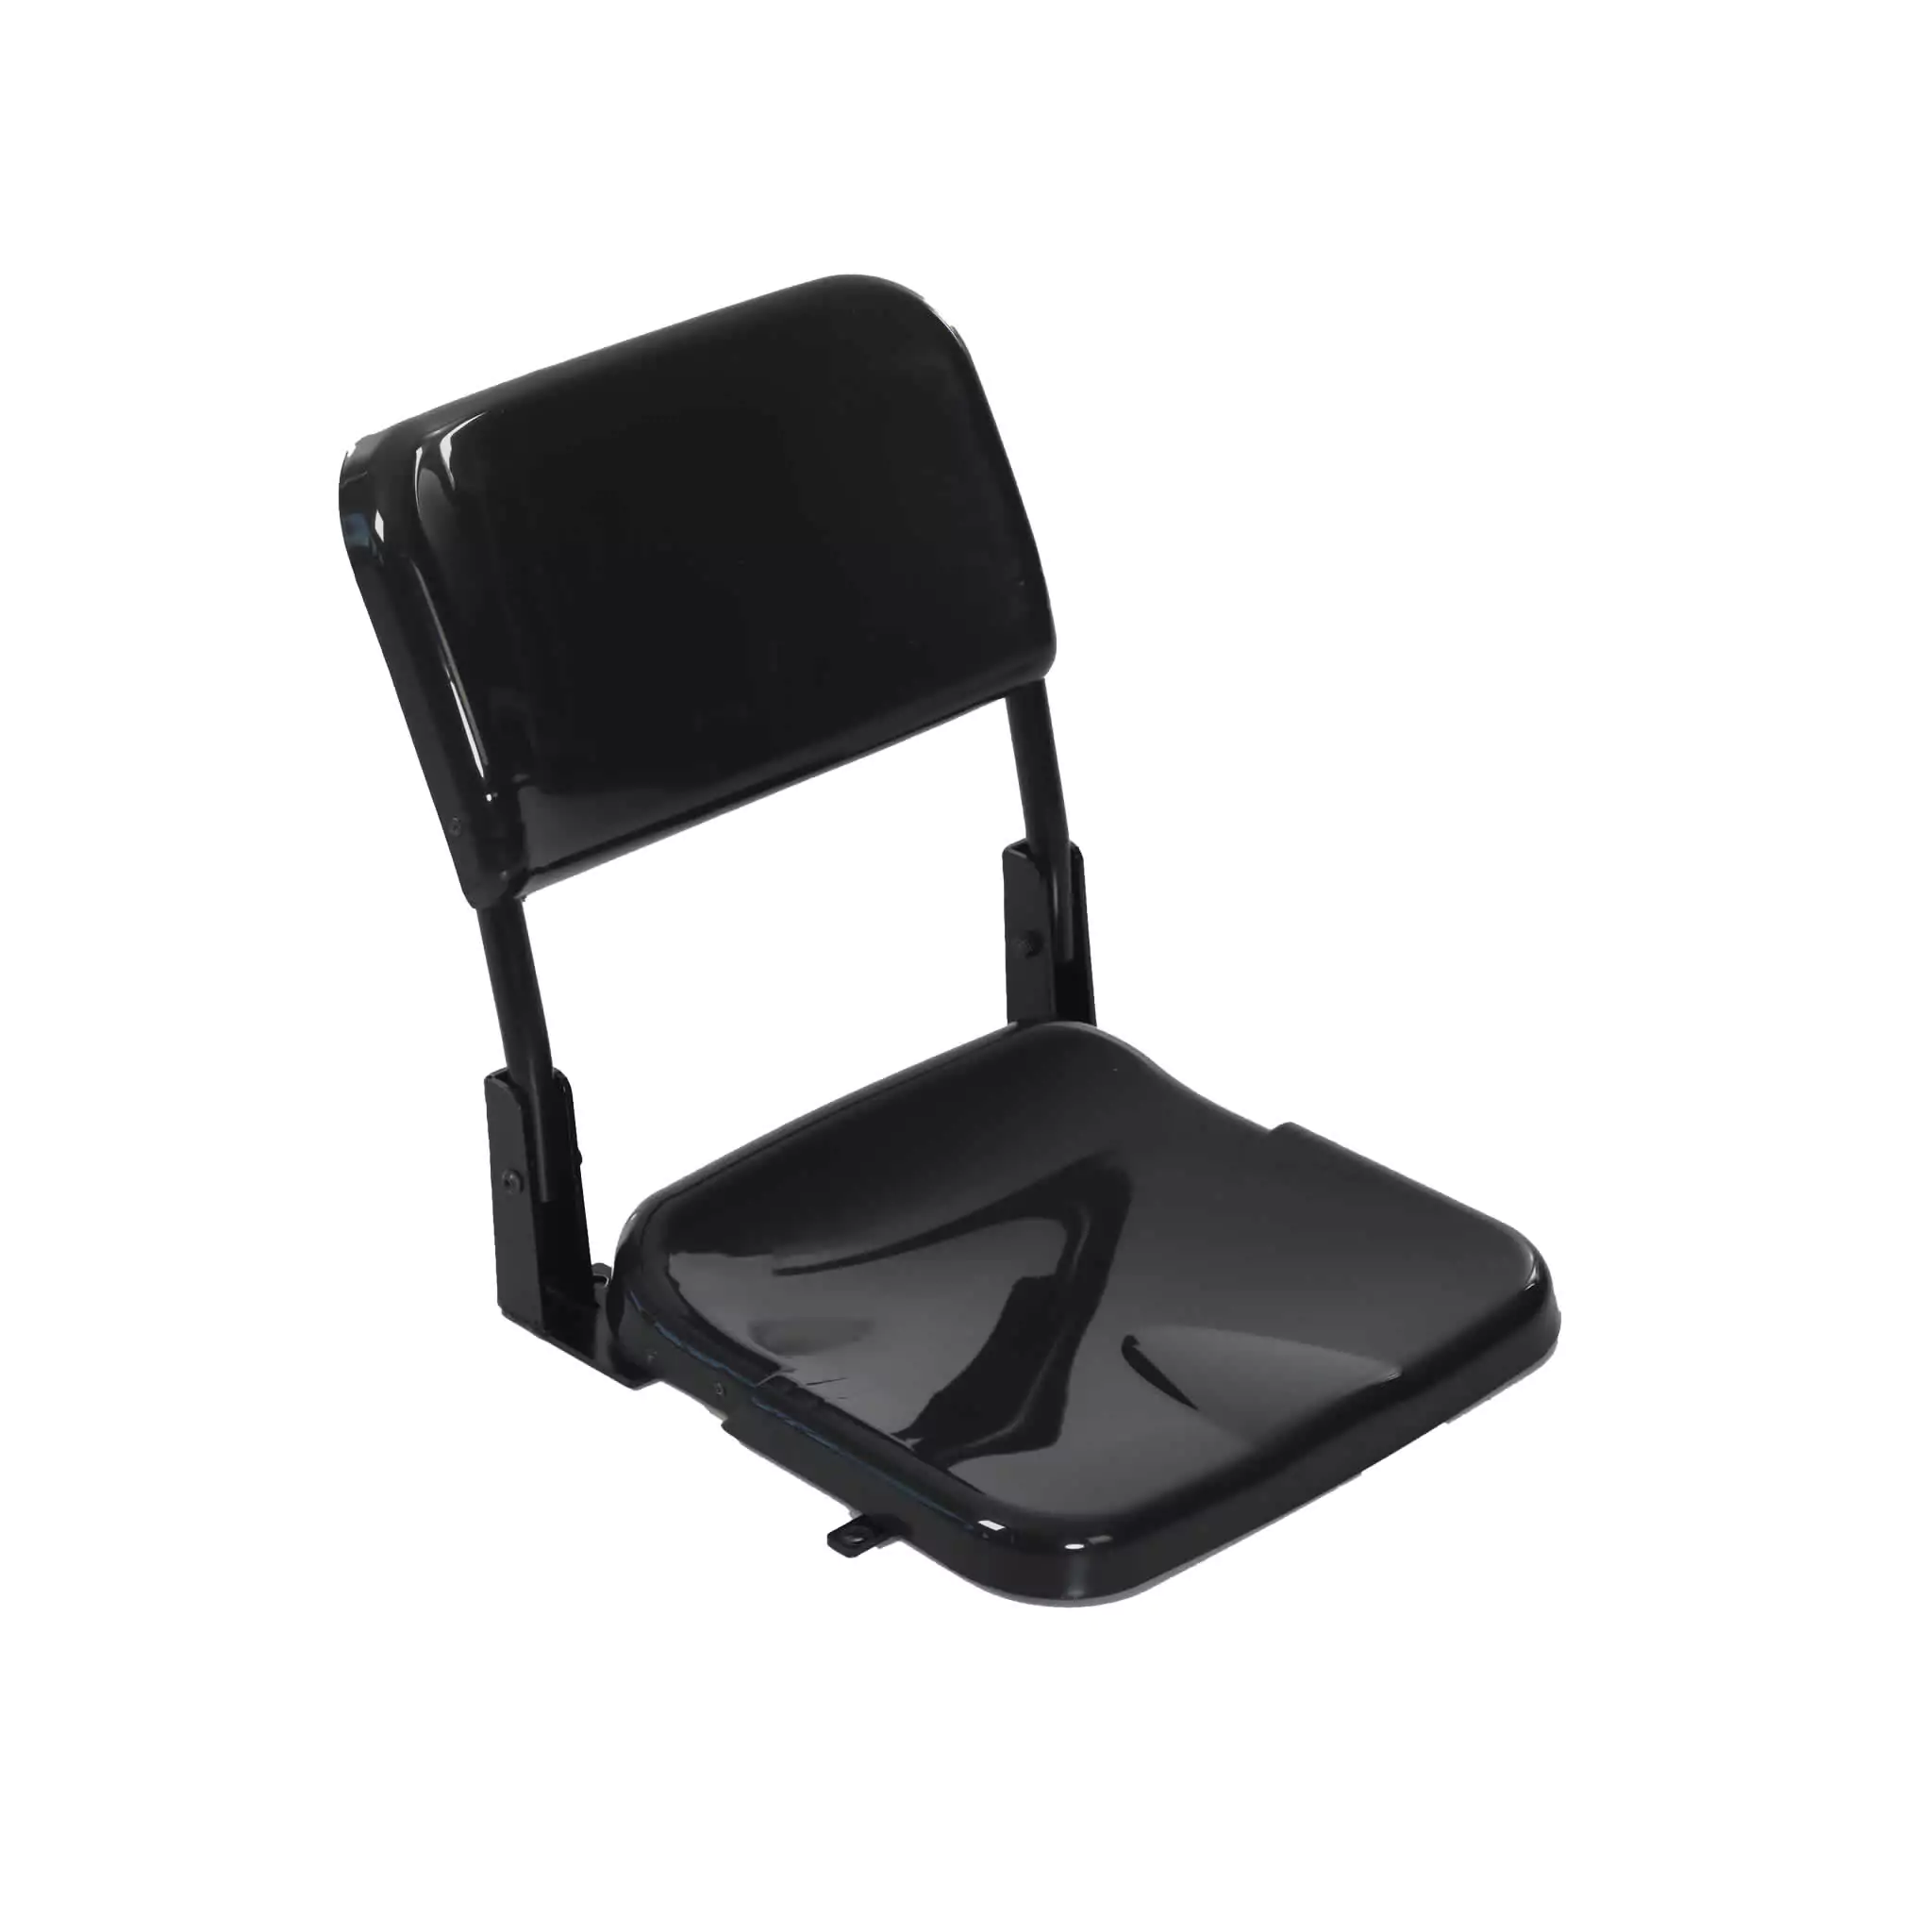 Simko Seating Products Telescopic Stadium Seat Azurit 02